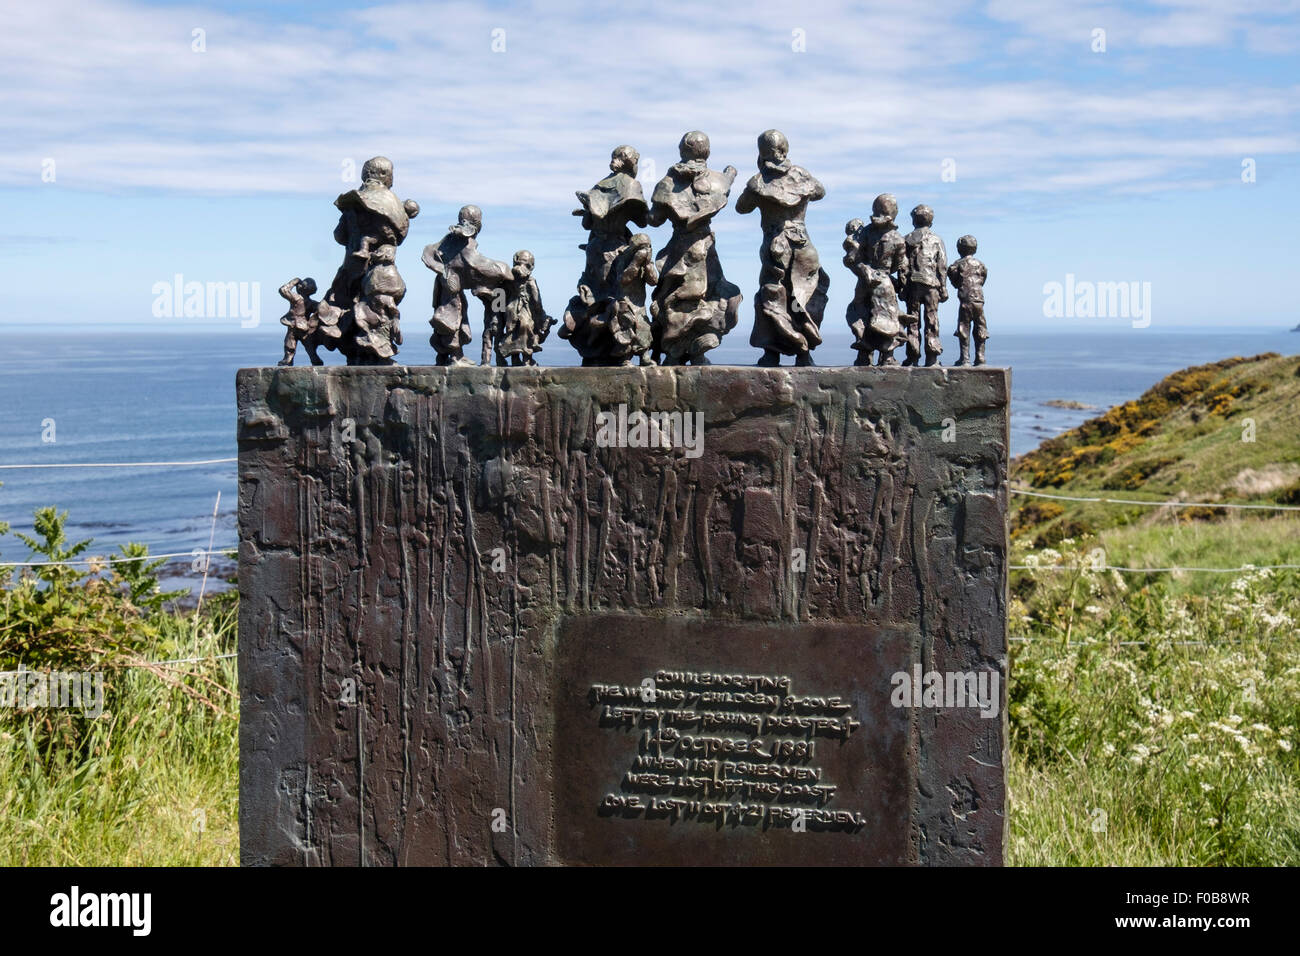 Les figures de femmes et d'enfants sur la mémoire des pêches de la côte est des catastrophes en 1881 Cove Scottish Borders Ecosse UK, Grande-Bretagne Banque D'Images